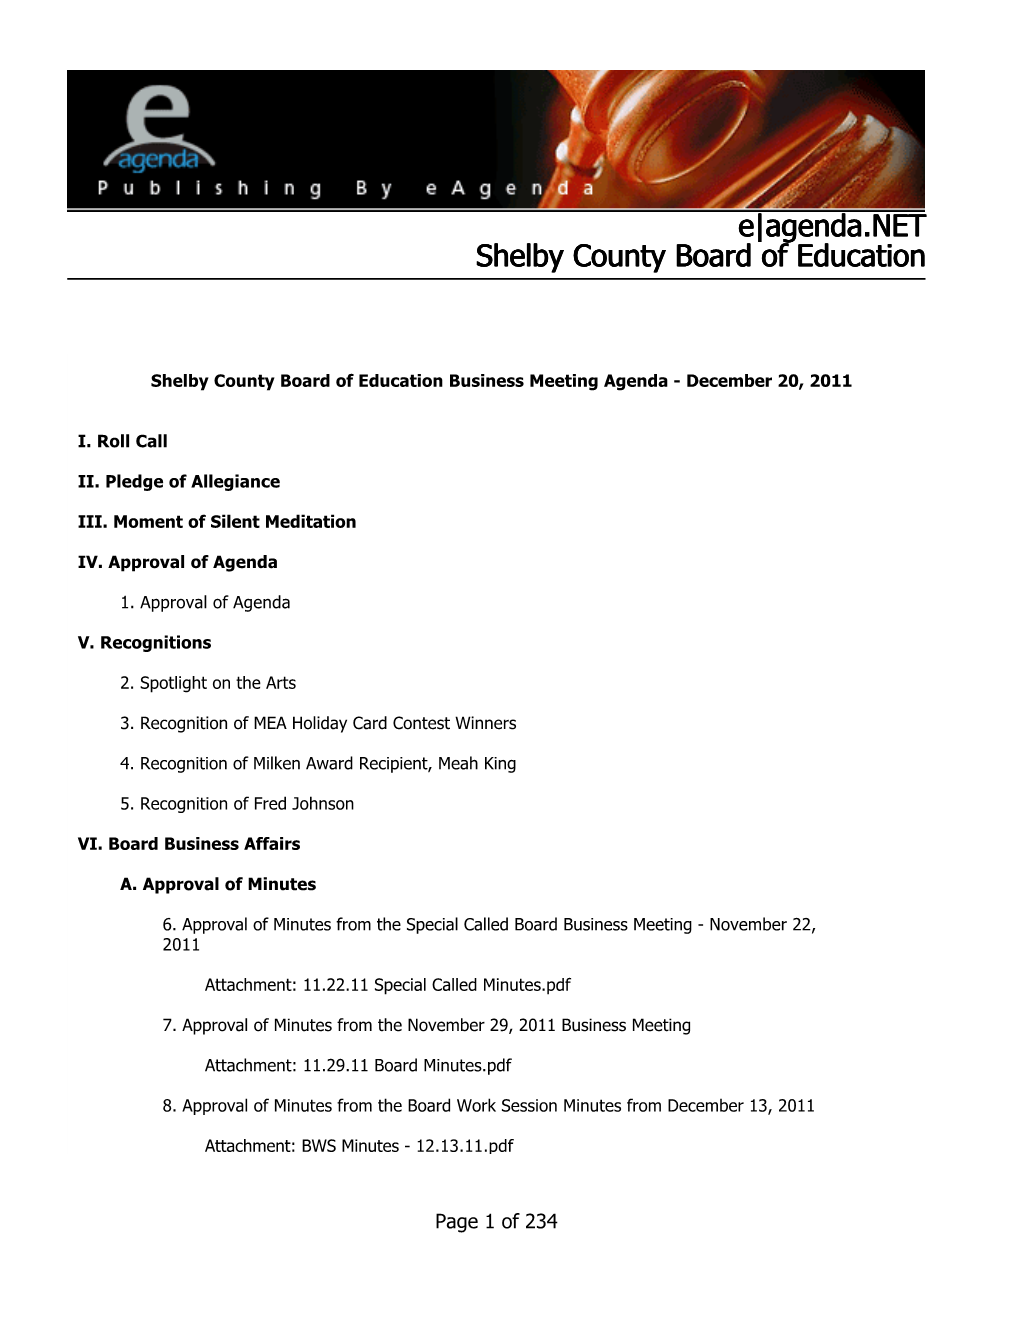 Agenda.NET Shelby County Board of Education